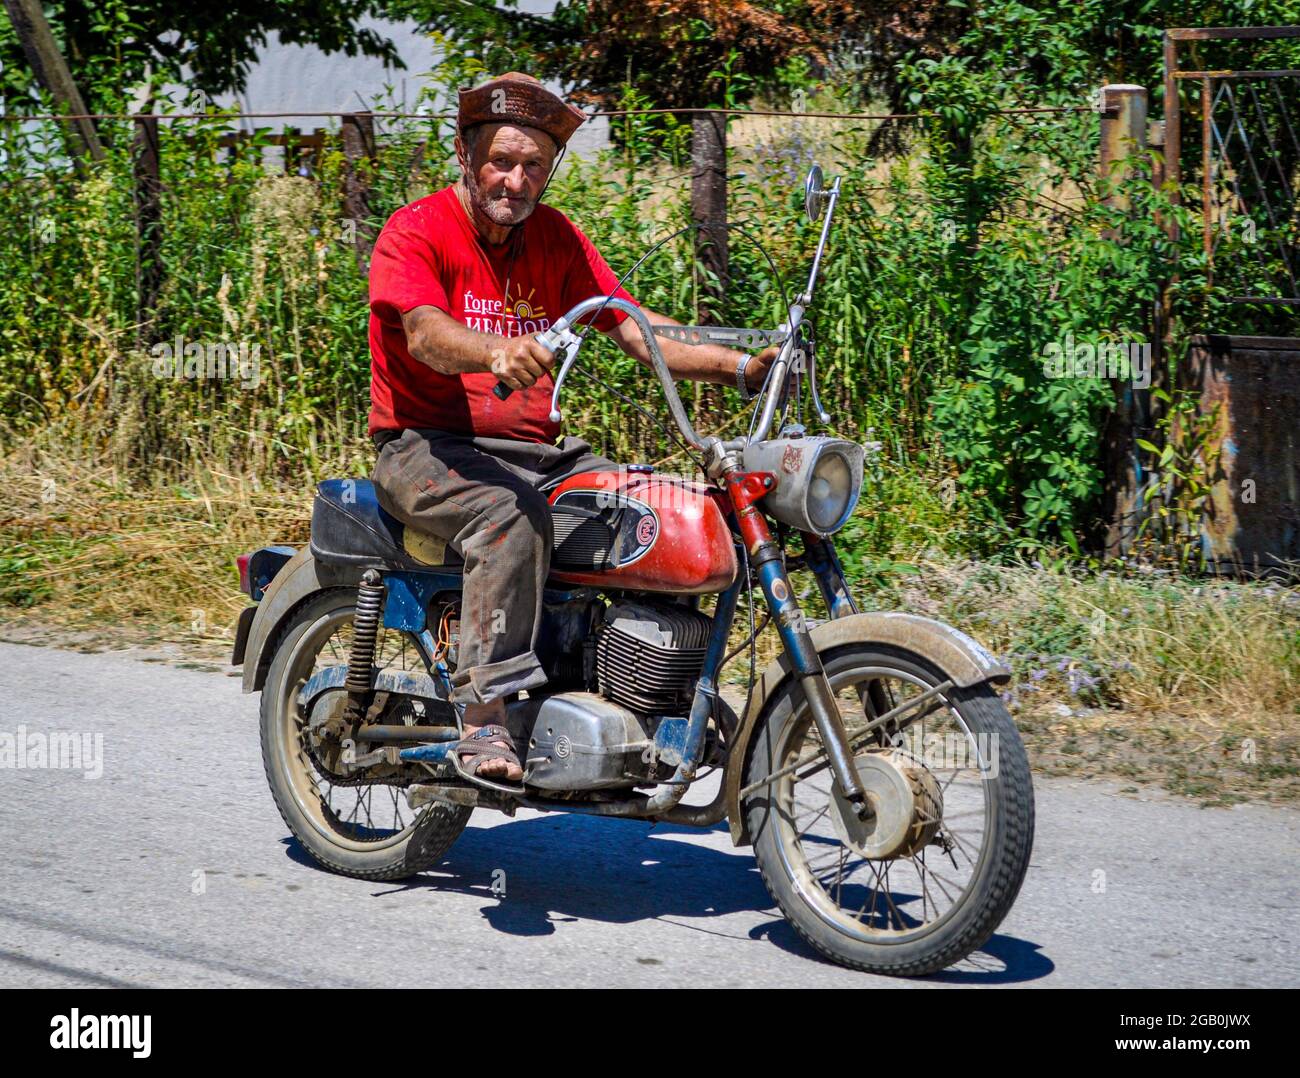 Motorradfahrer mit Hut auf einem alten Motorrad auf einer Landstraße Stockfoto